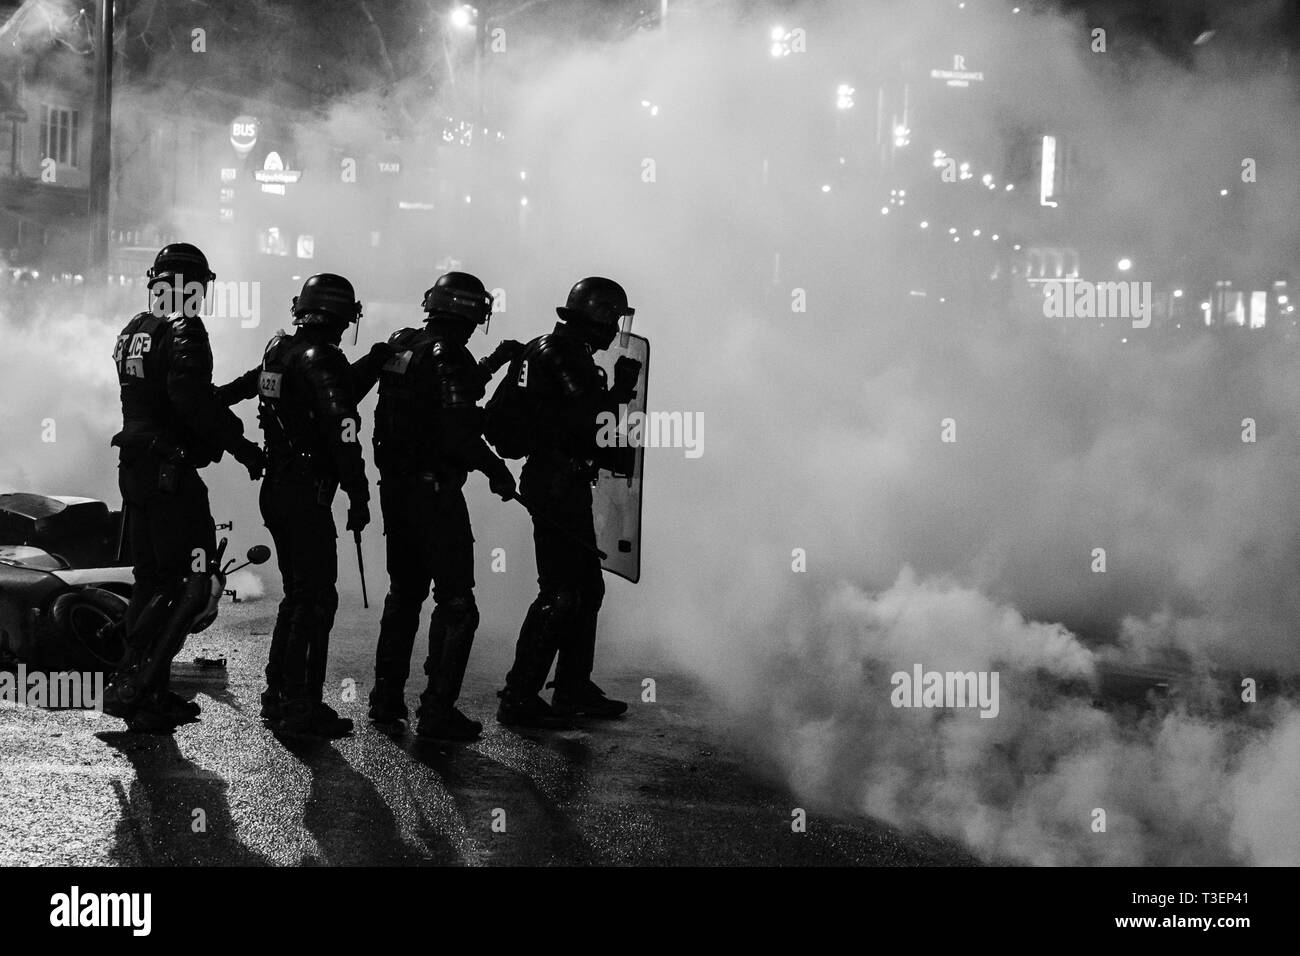 La police française a riot essayant de reprendre le contrôle à l'encontre de 'yellow vest' émeutiers lors d'une manifestation place de la République à Paris le 9 février 2019 Banque D'Images